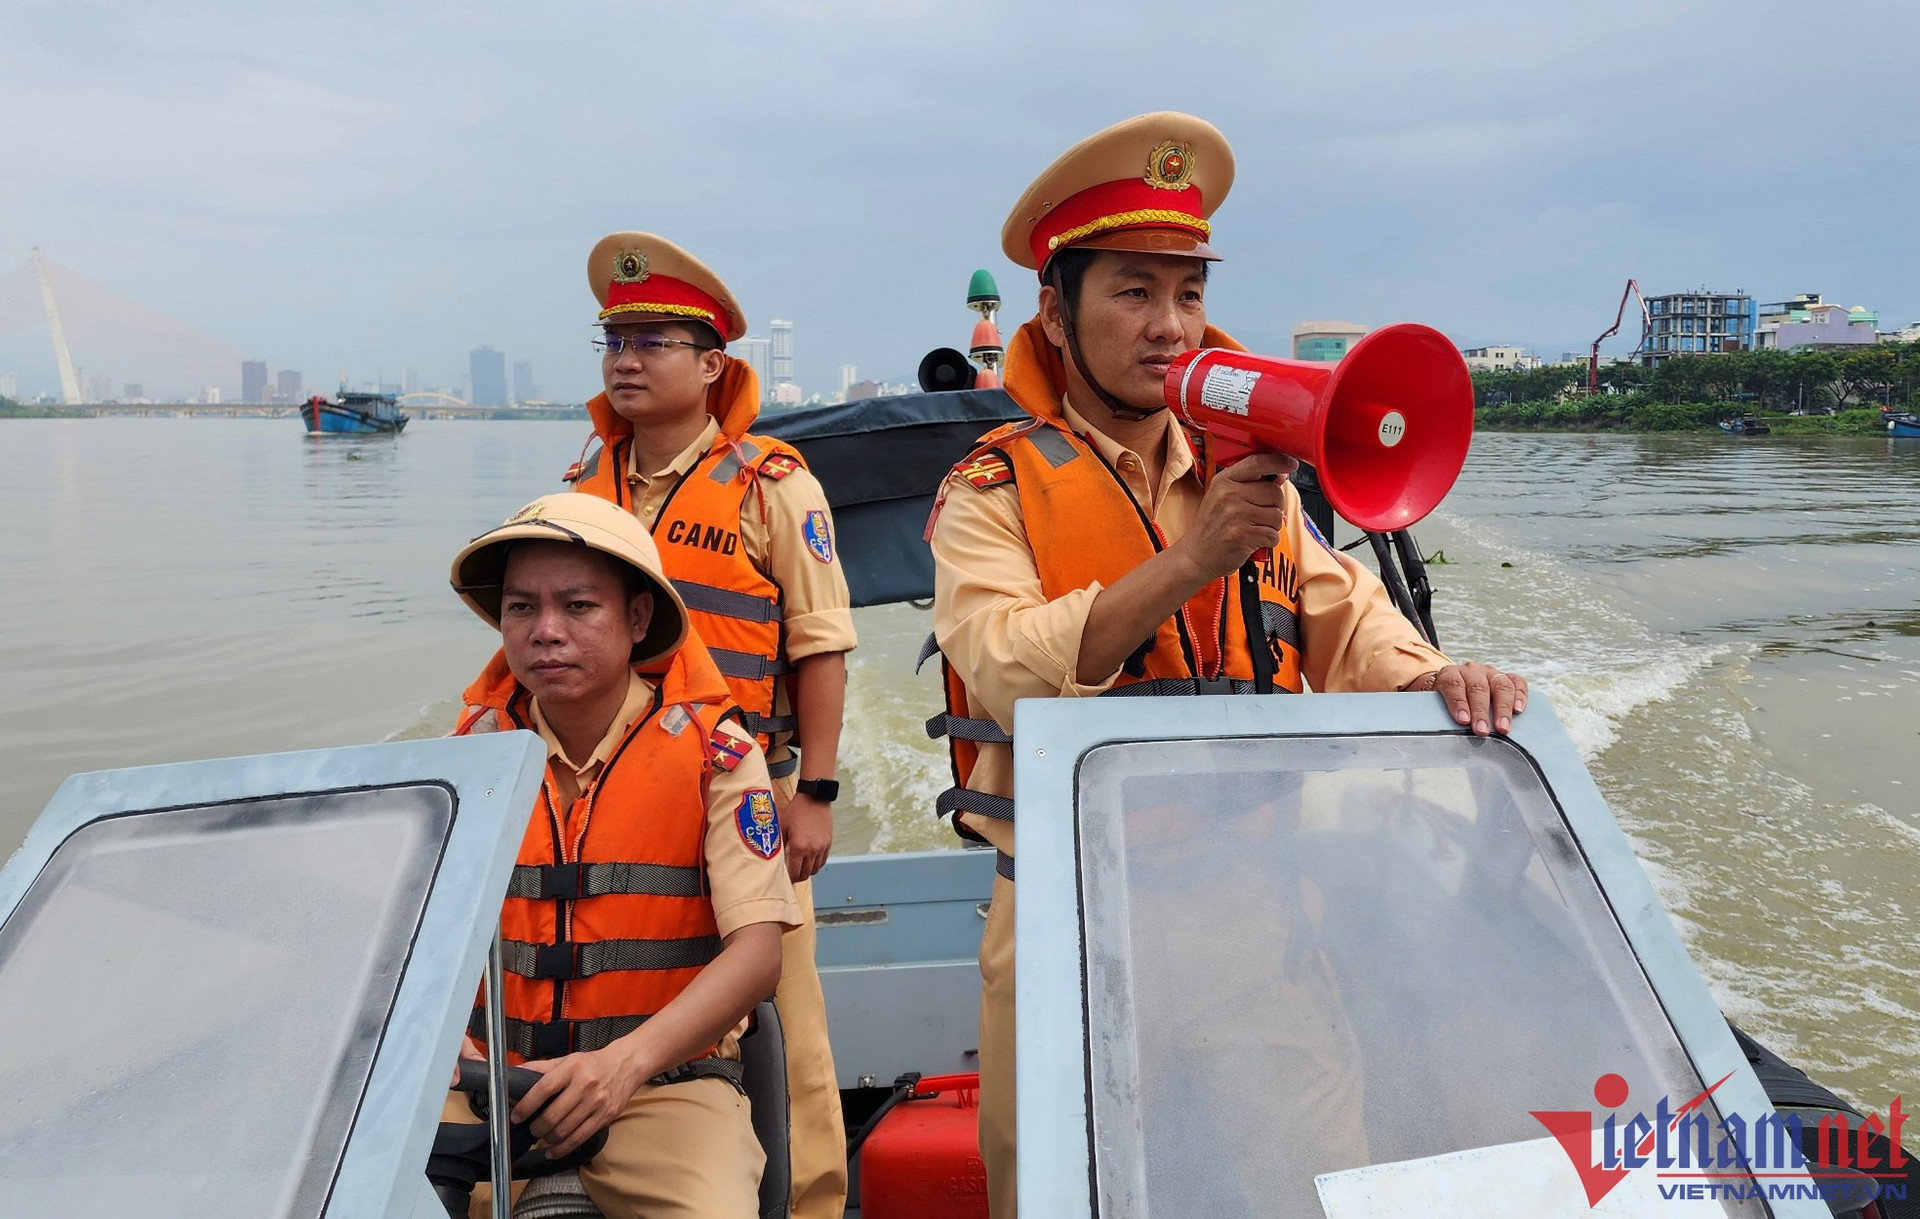 Cảnh sát đường thủy tuần tra trên sông Hàn, kêu gọi người dân còn ở trên các tàu thuyền lên bờ tránh bão.